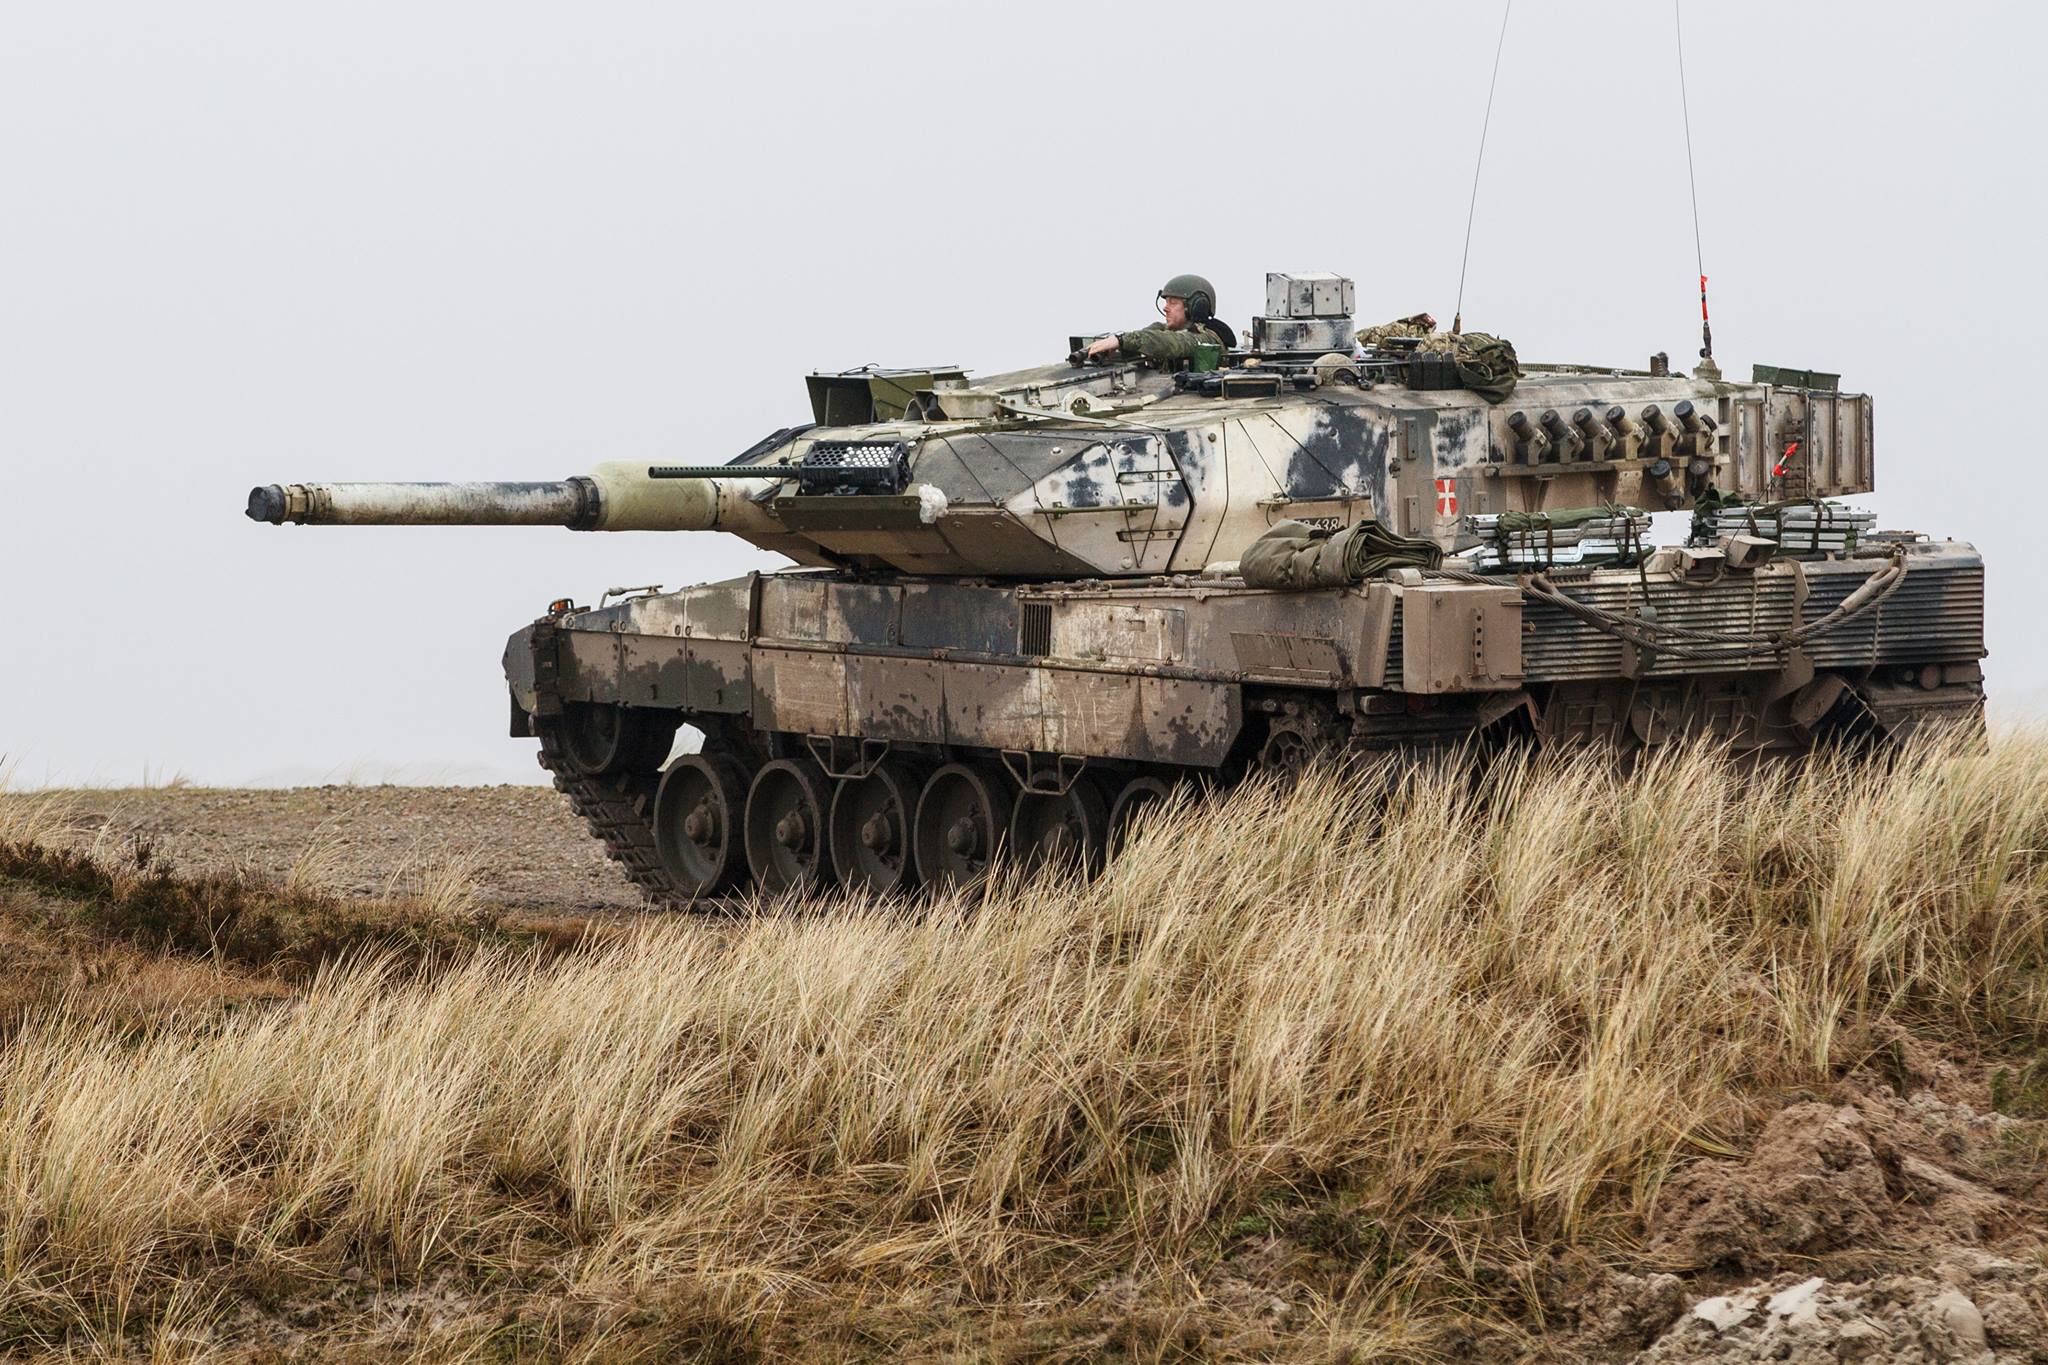 Hệ thống chiến đấu của xe tăng Đức Leopard 2 đã không còn phù hợp